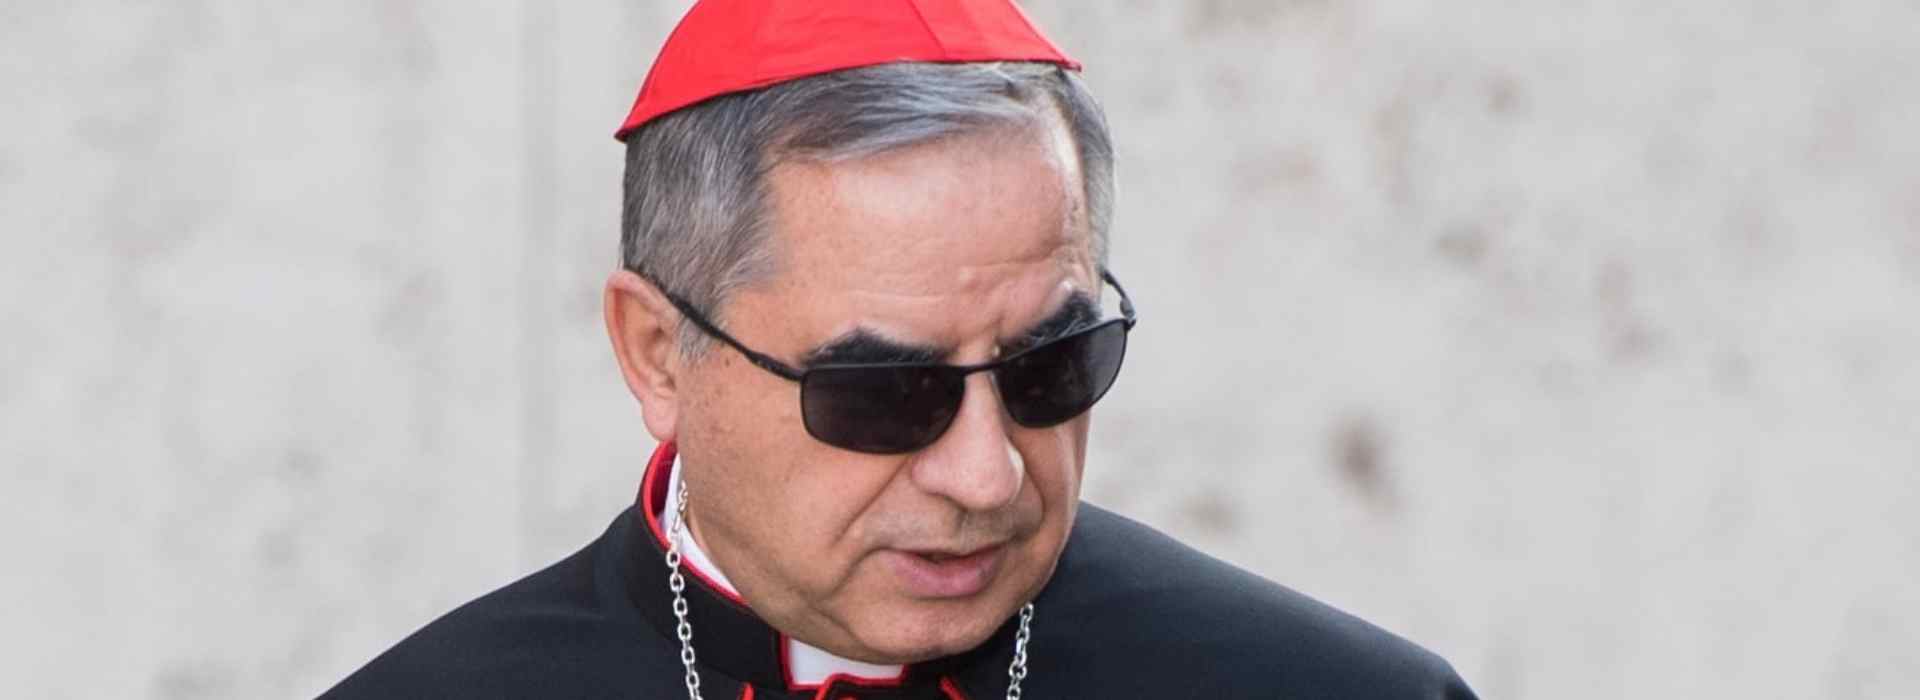 Il cardinale Becciu, le chat con monsignor Perlasca e le spese in alberghi di lusso